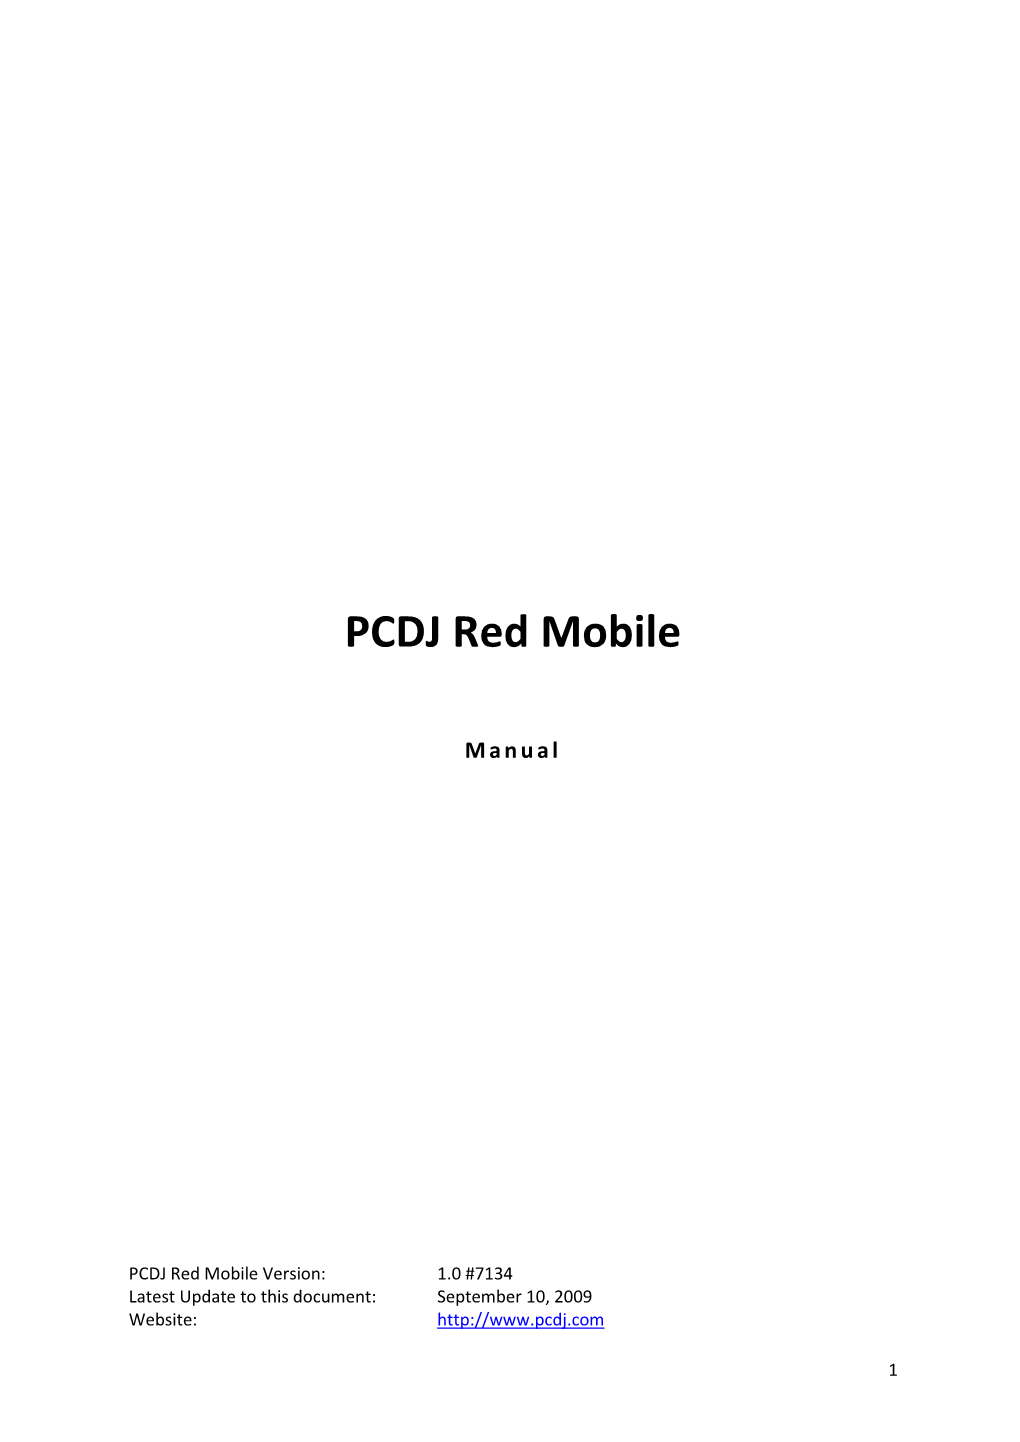 PCDJ Red Mobile Manual